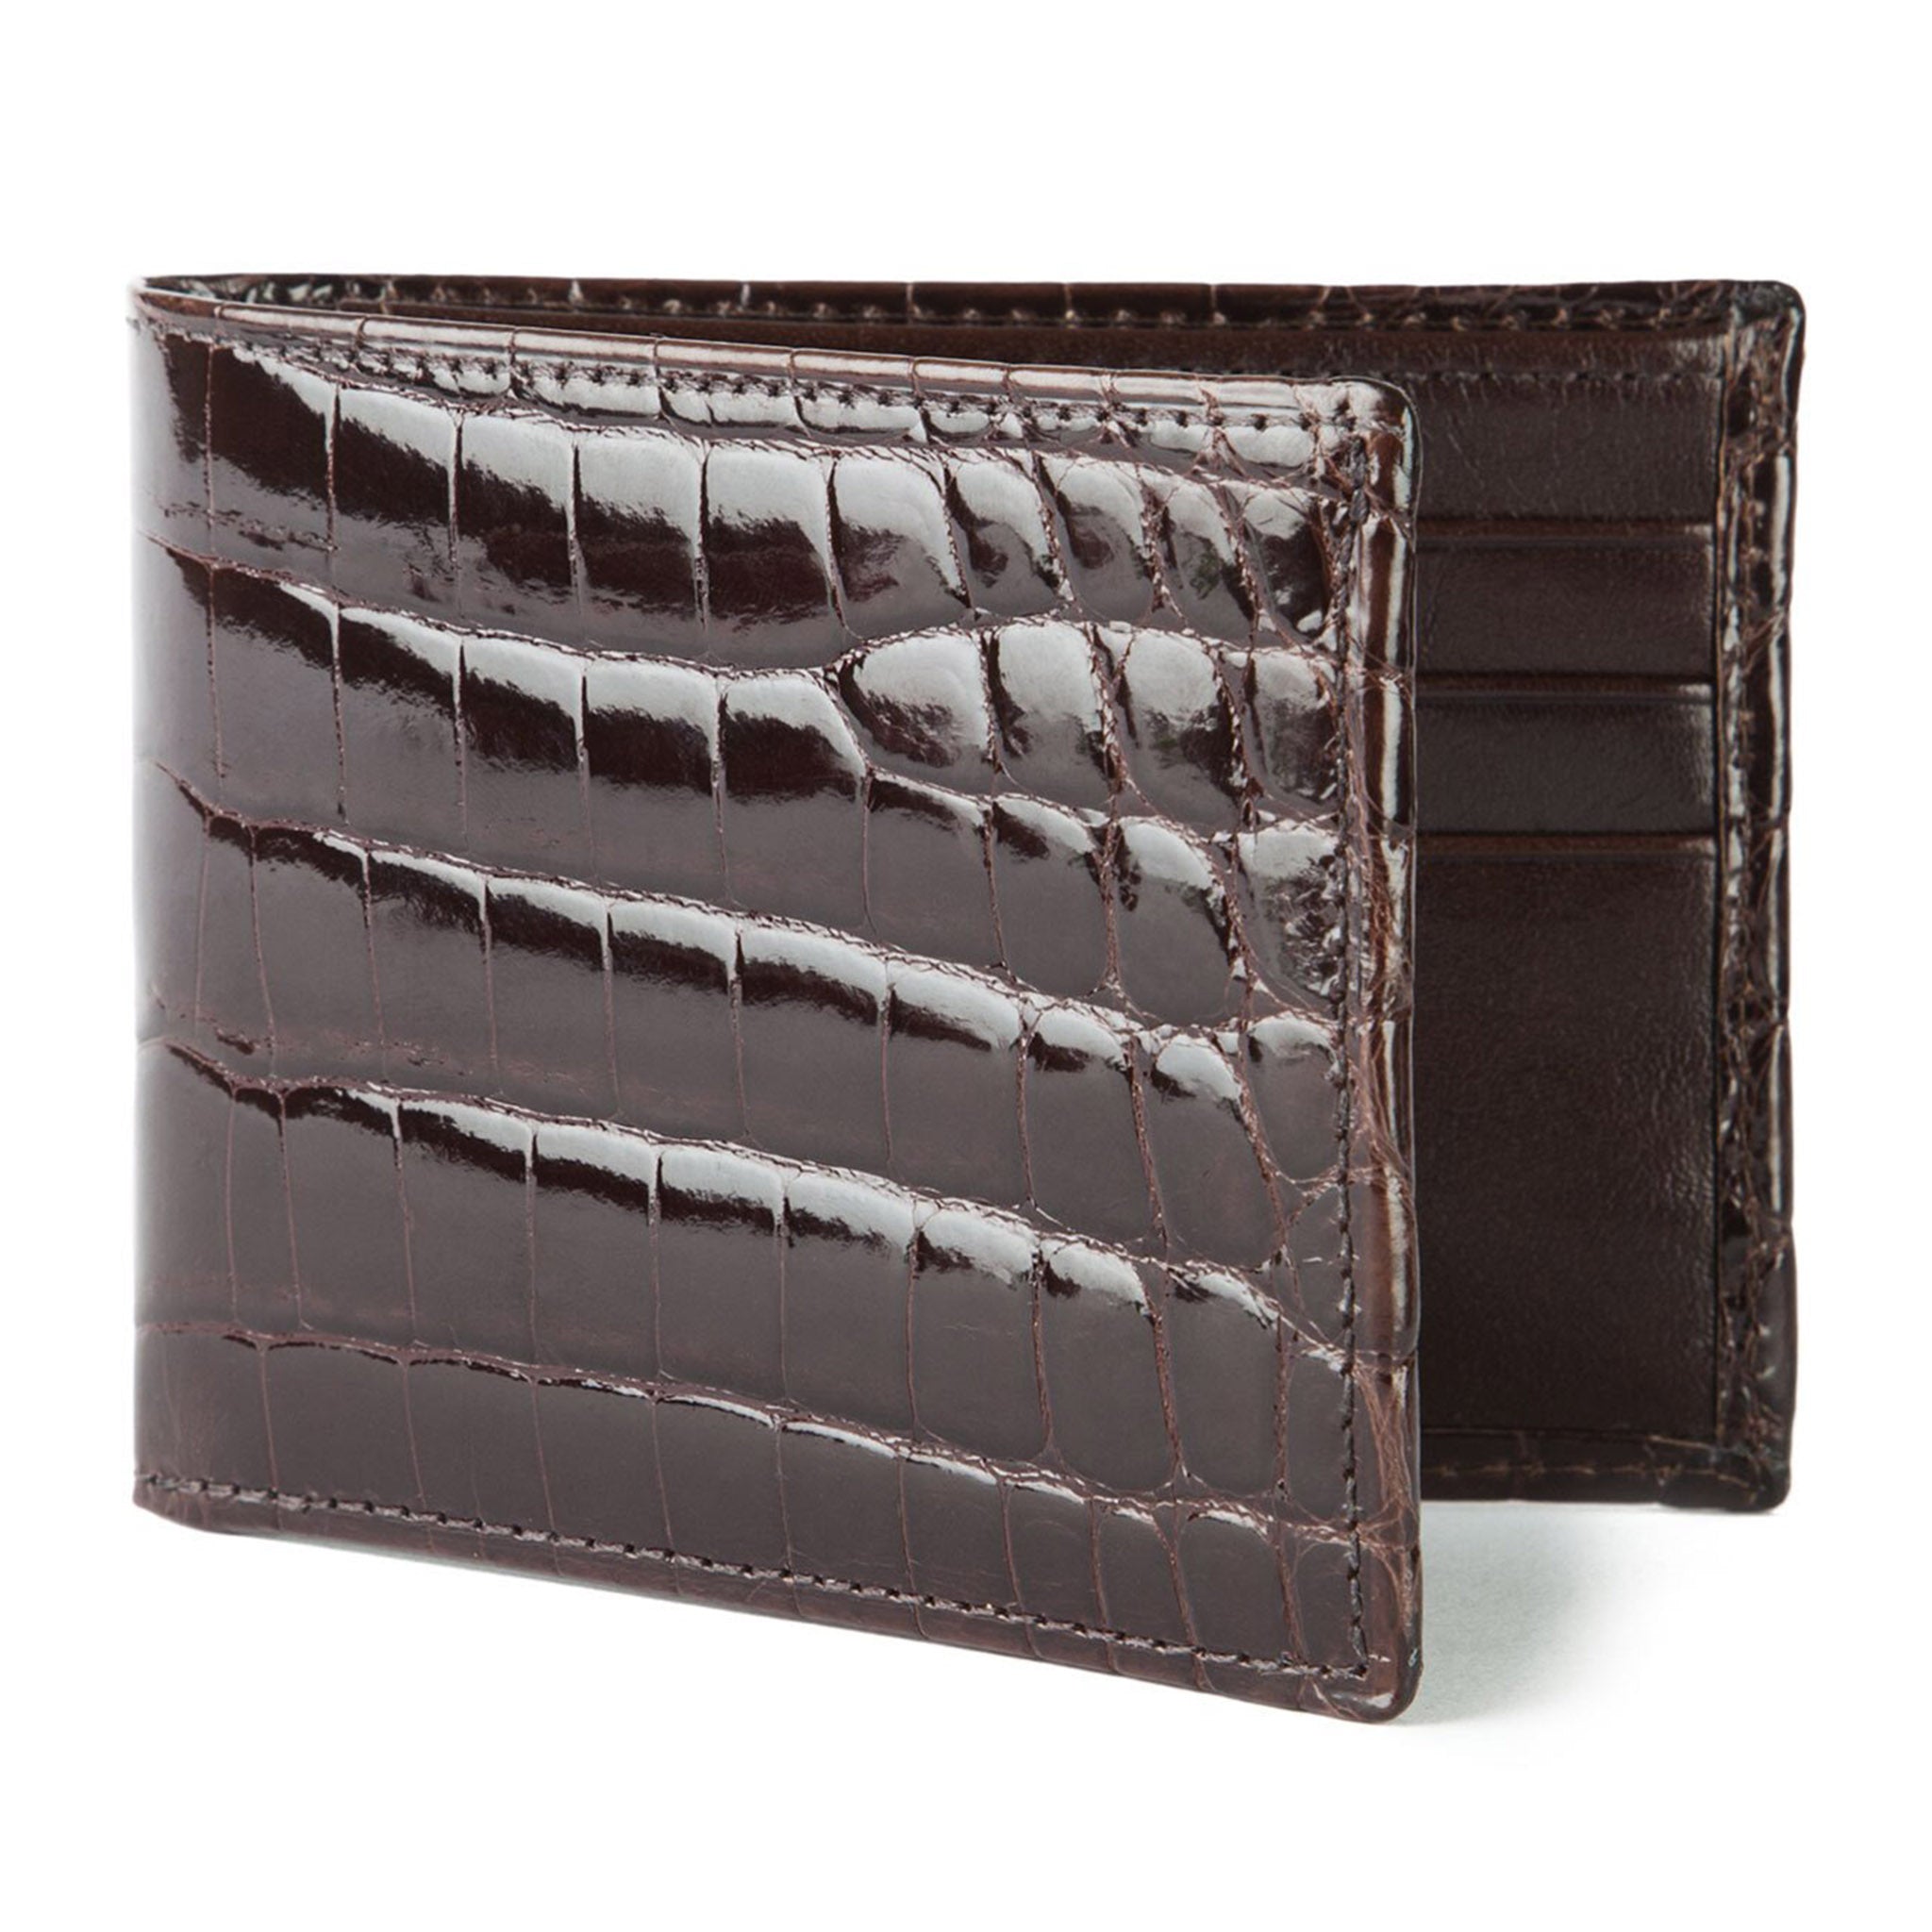 Chocolate Brown Alligator Bifold Wallet